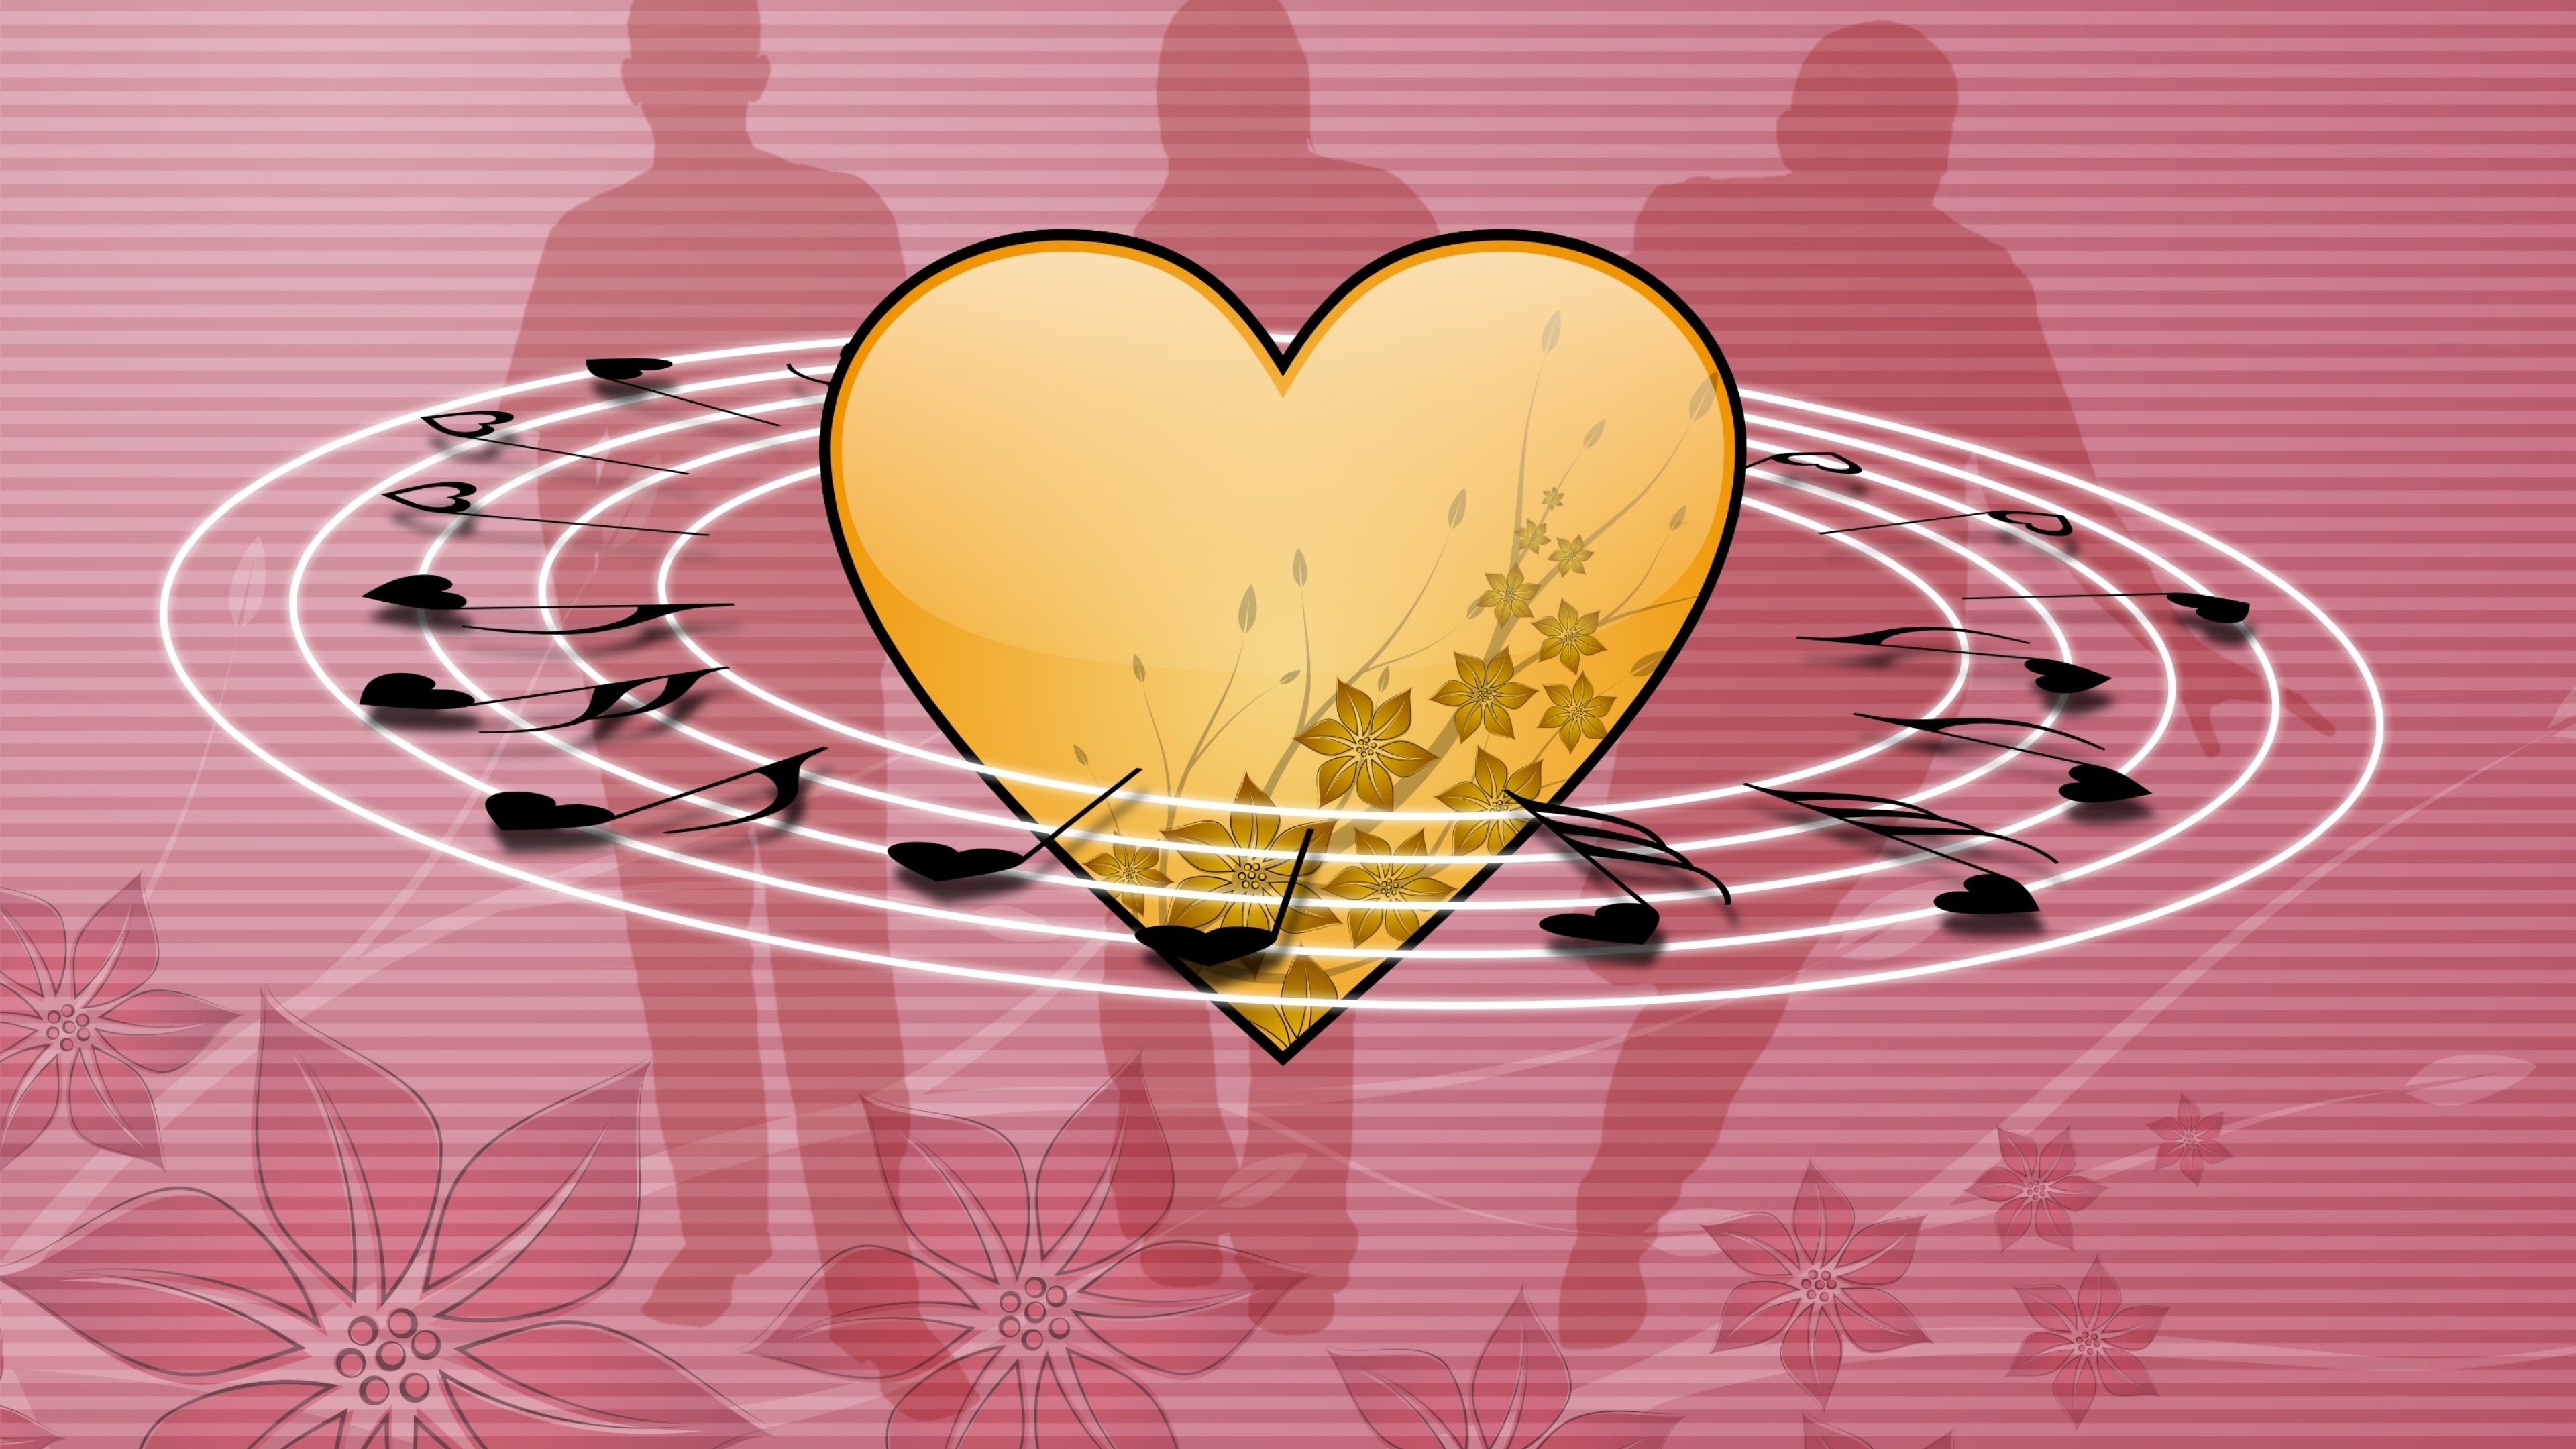 Music 5 love. Музыкальное сердце. Сердечки картинки. Рисунок на музыкальную тему в сердце. Музыкальное сердечко.